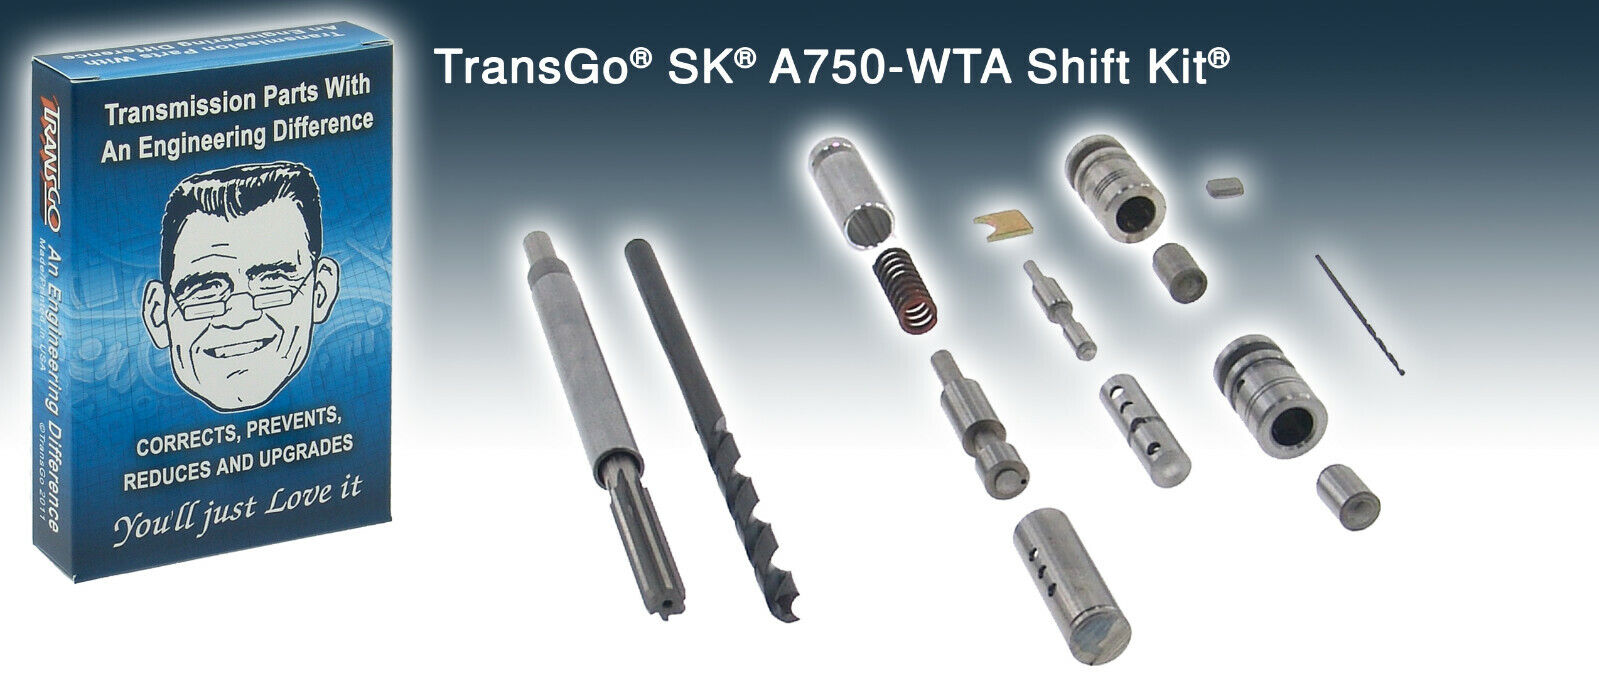 Transgo SK A750 WTA Shift Kit Tools Included A750F A761E A960E A760E 147165CT